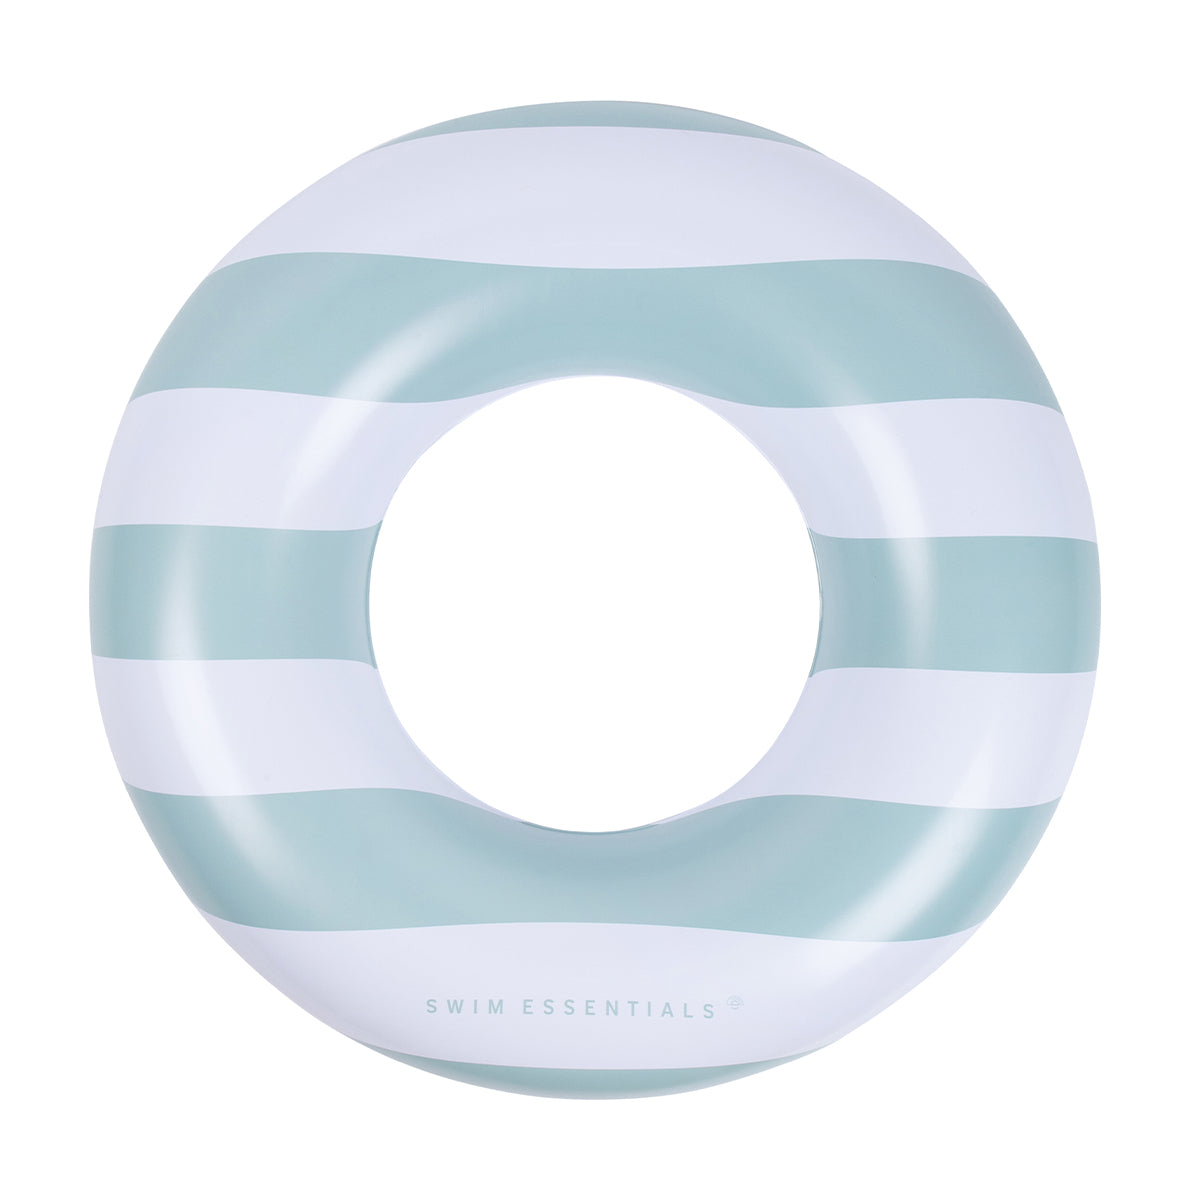 De Swim Essentials zwemband 90 cm green white stripes is het perfecte accessoire voor jouw kindje tijdens een dagje bij het zwembad of de zee. Deze leuke zwemband is niet rond maar heeft de vorm van een hart. VanZus.